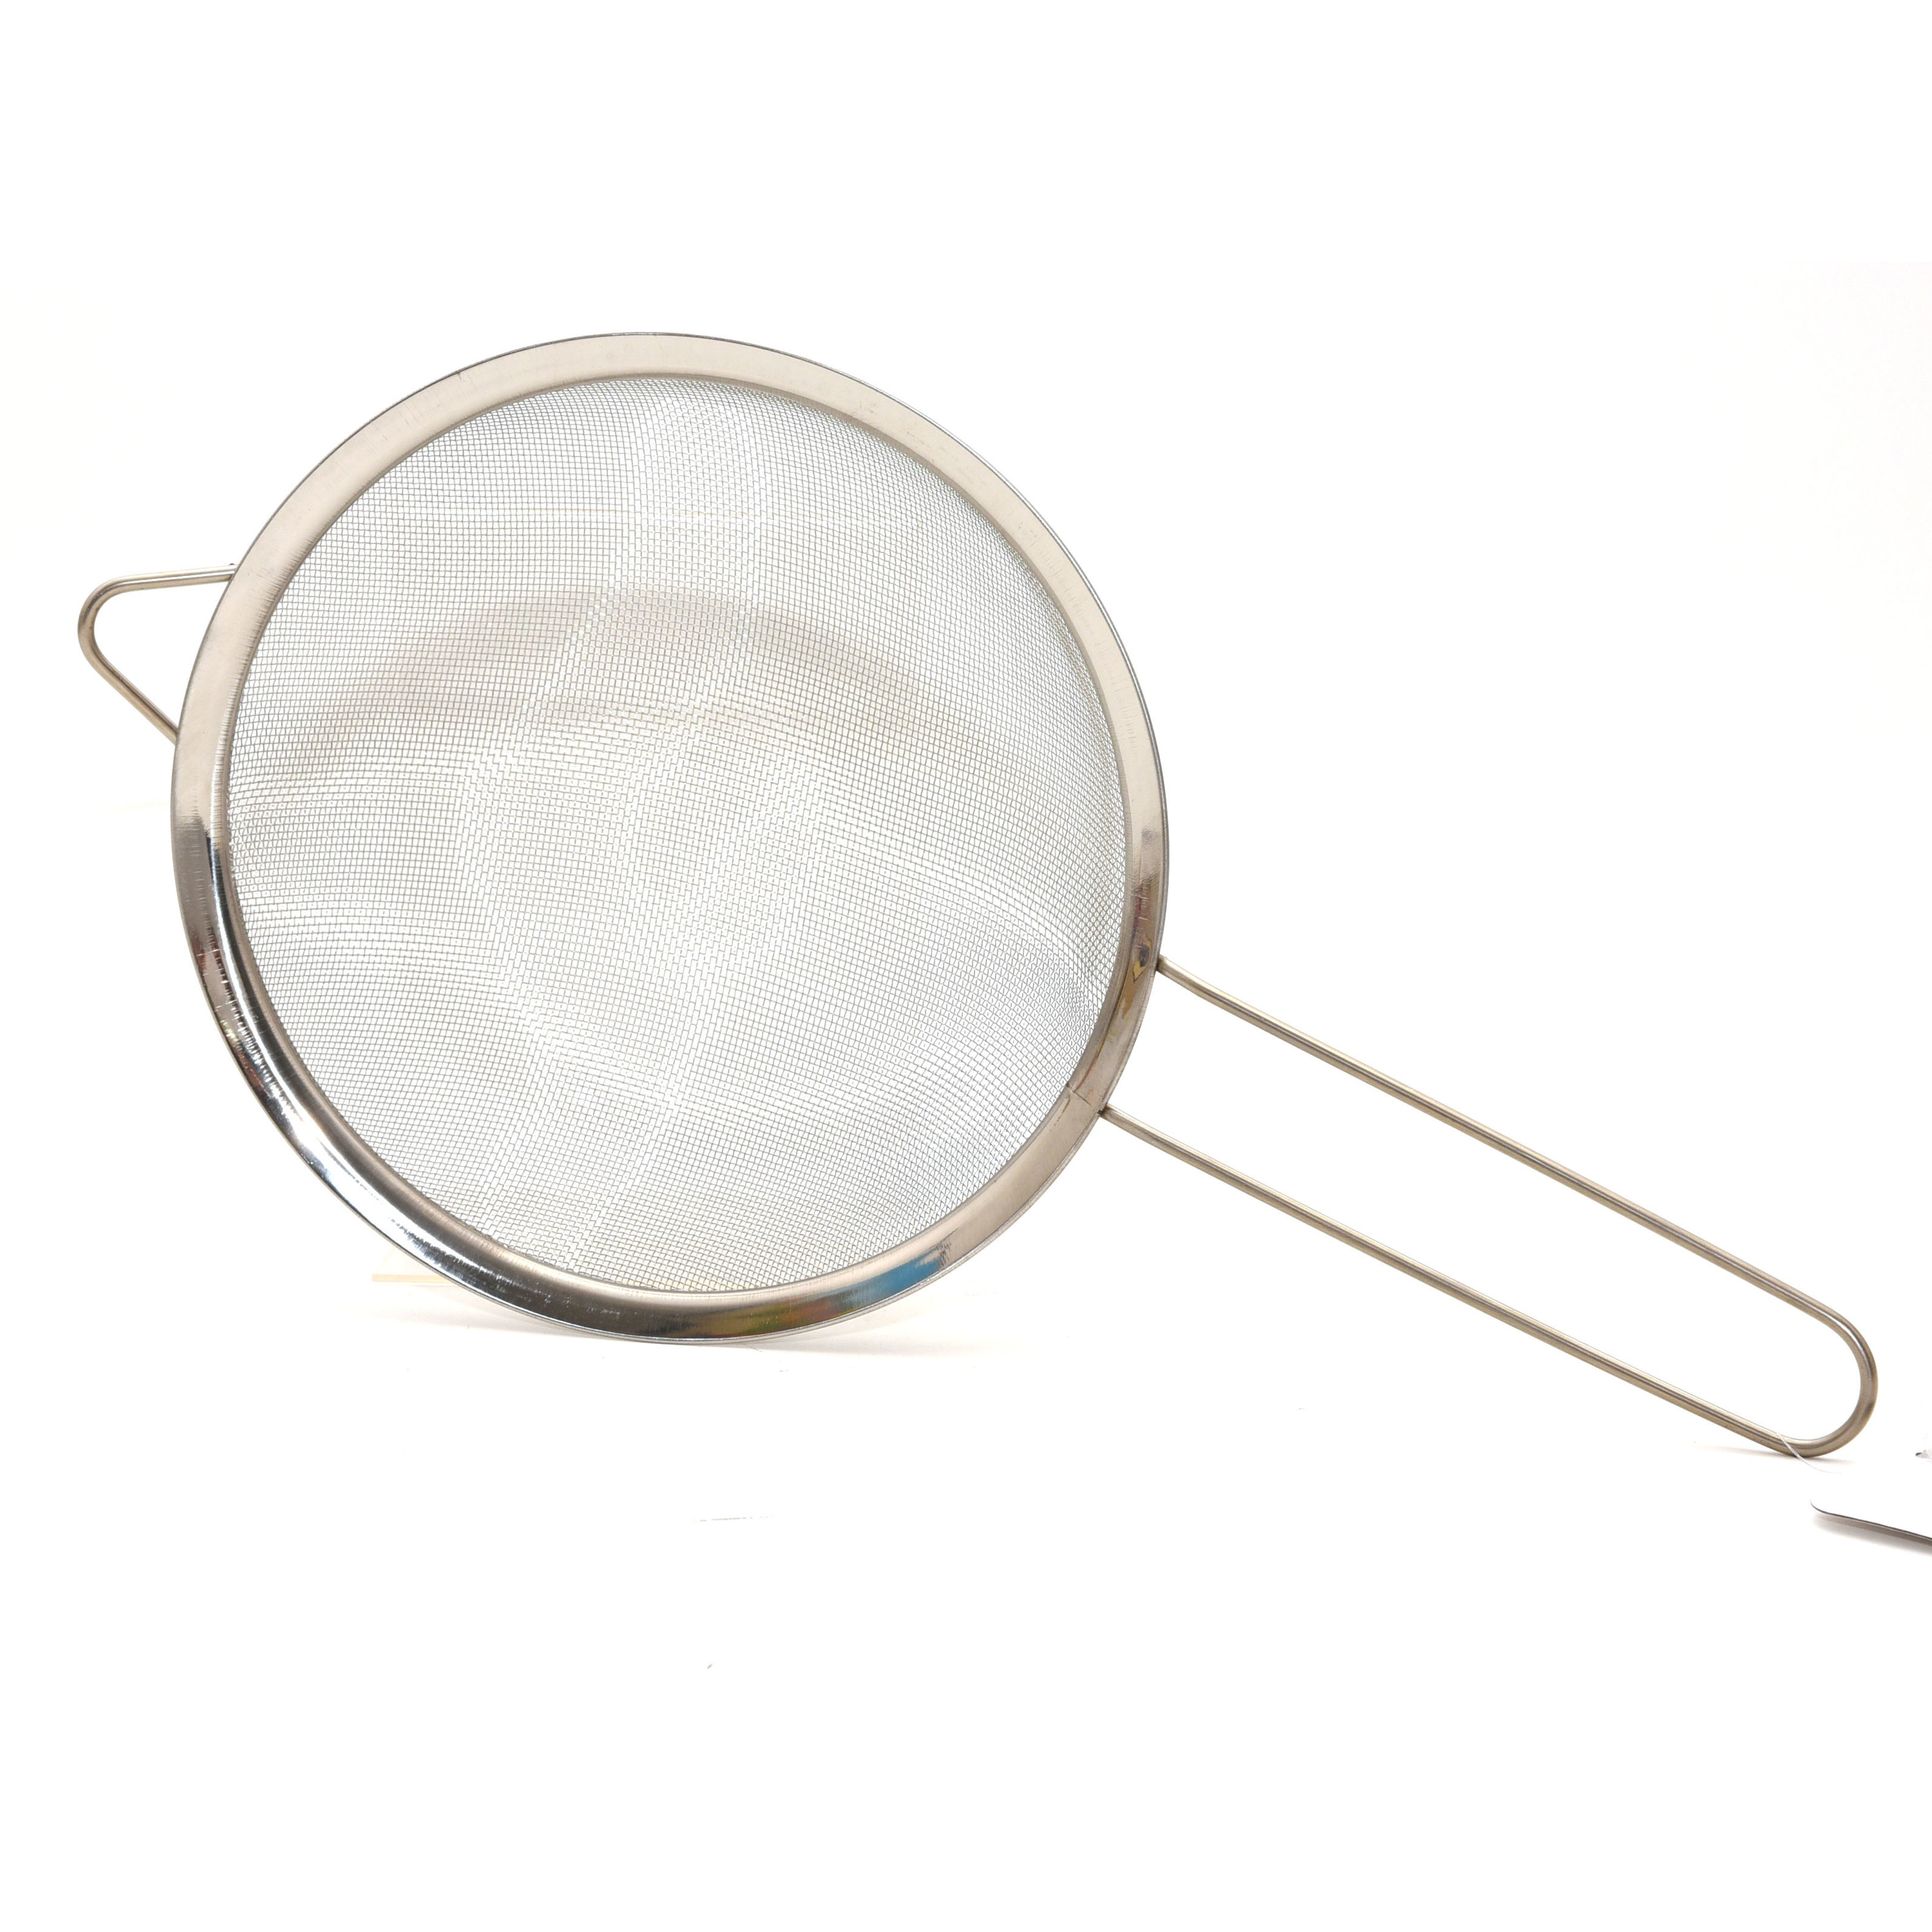 1x Keuken vergiet-zeef edelstaal diameter 26 cm